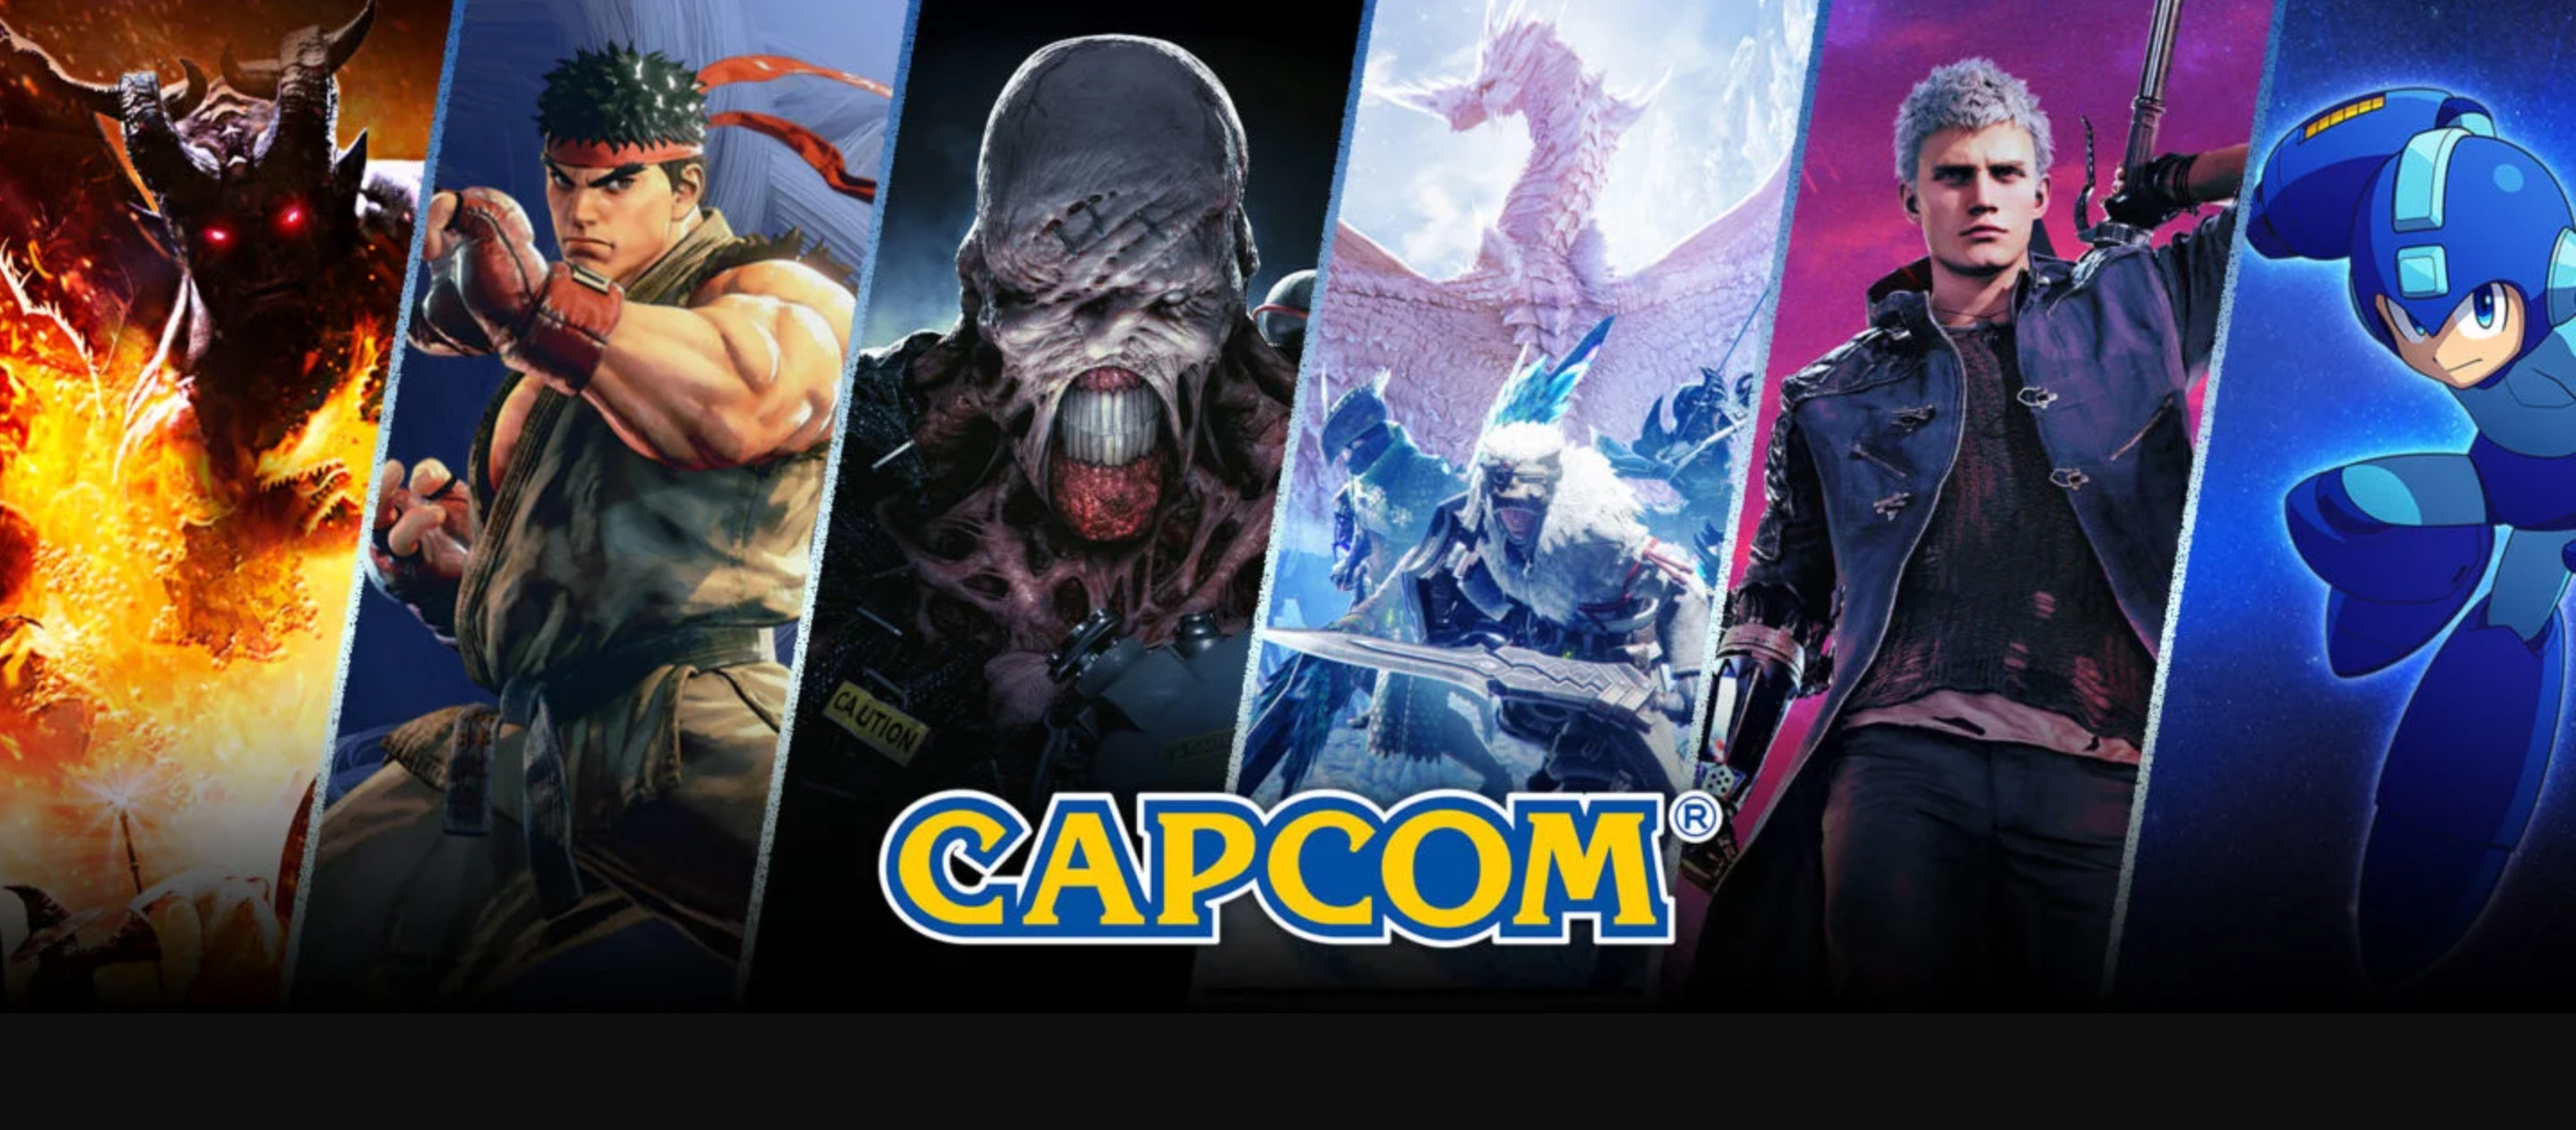 【PC遊戲】Capcom遊戲銷量打破記錄 股價來到歷史新高